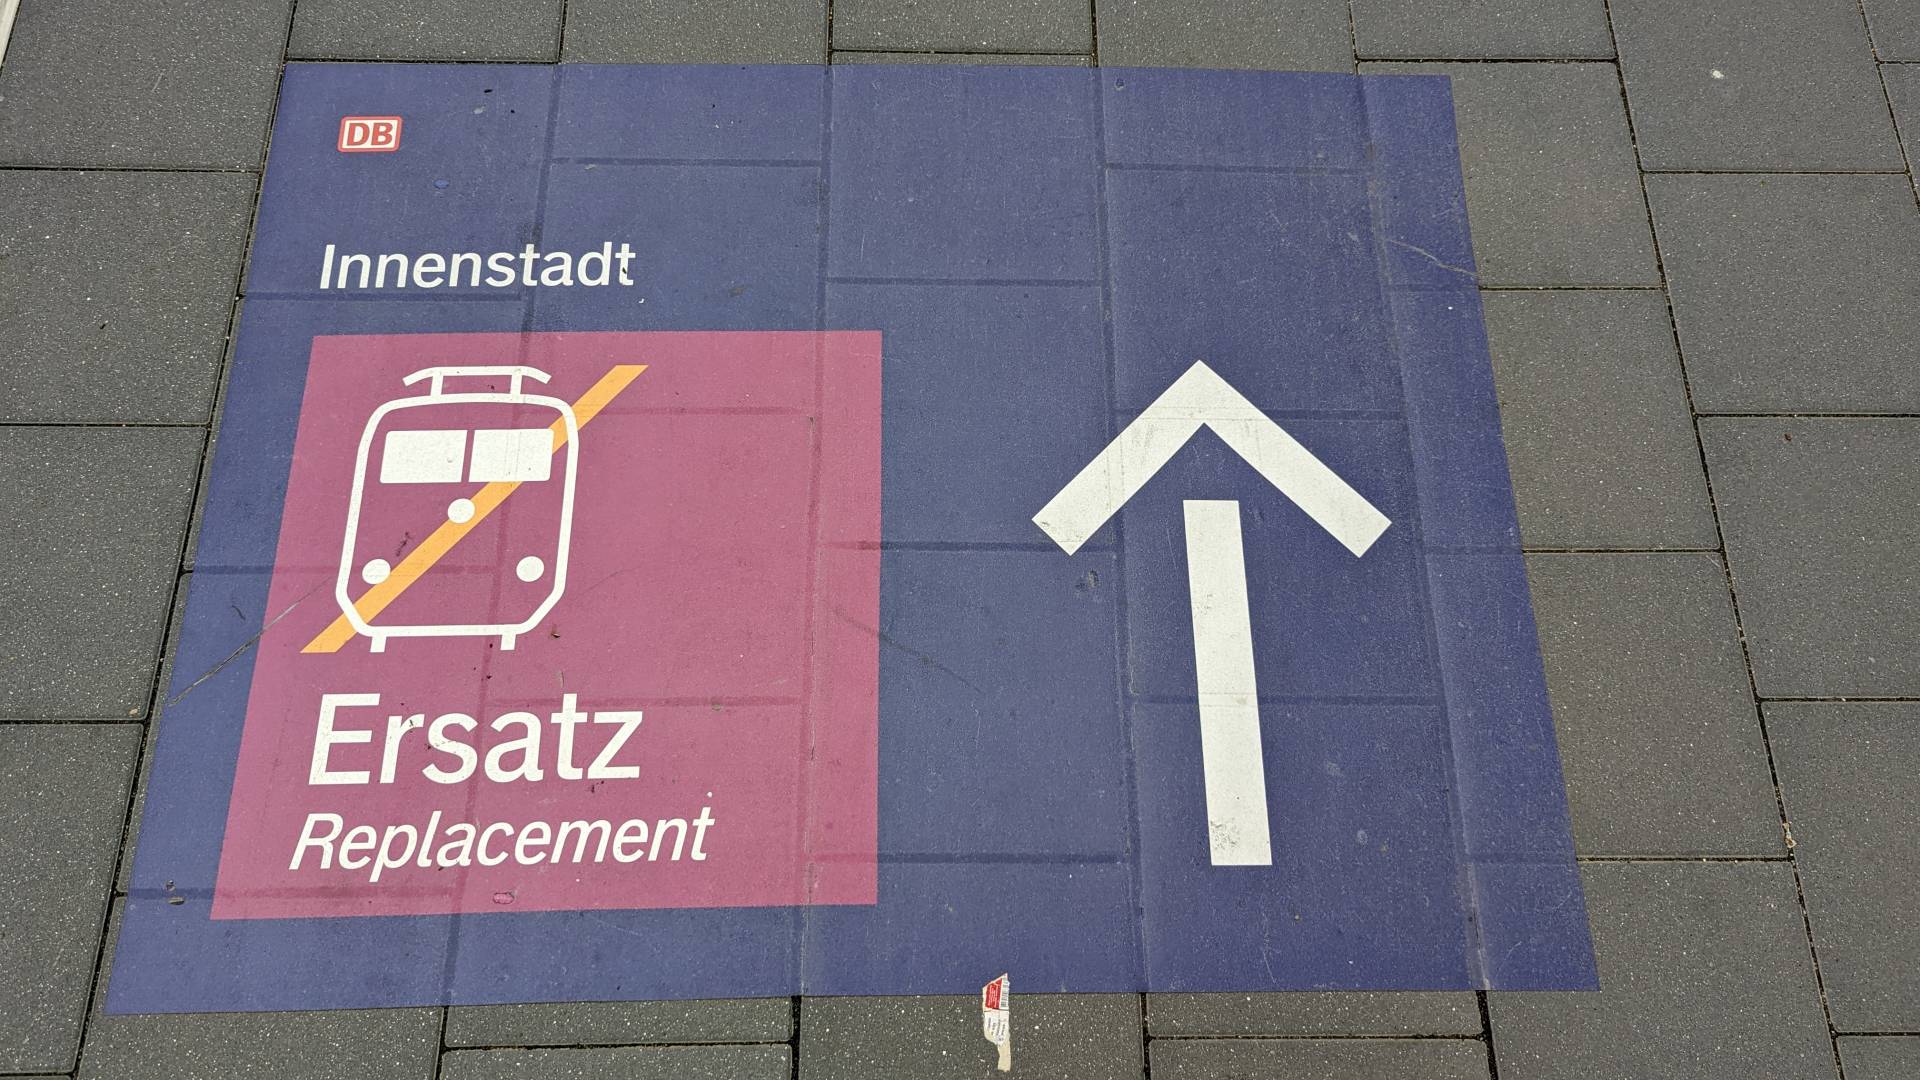 Ein blaues Schild mit einem Symbol für einen Zug, dass durchgestrichen ist. Darüber steht "Innenstadt" und rechts daneben ein großer Pfeil nach vorne als Richtunsgangabe. Oben links in der Ecke ist das Logo von der deutschen Bahn.